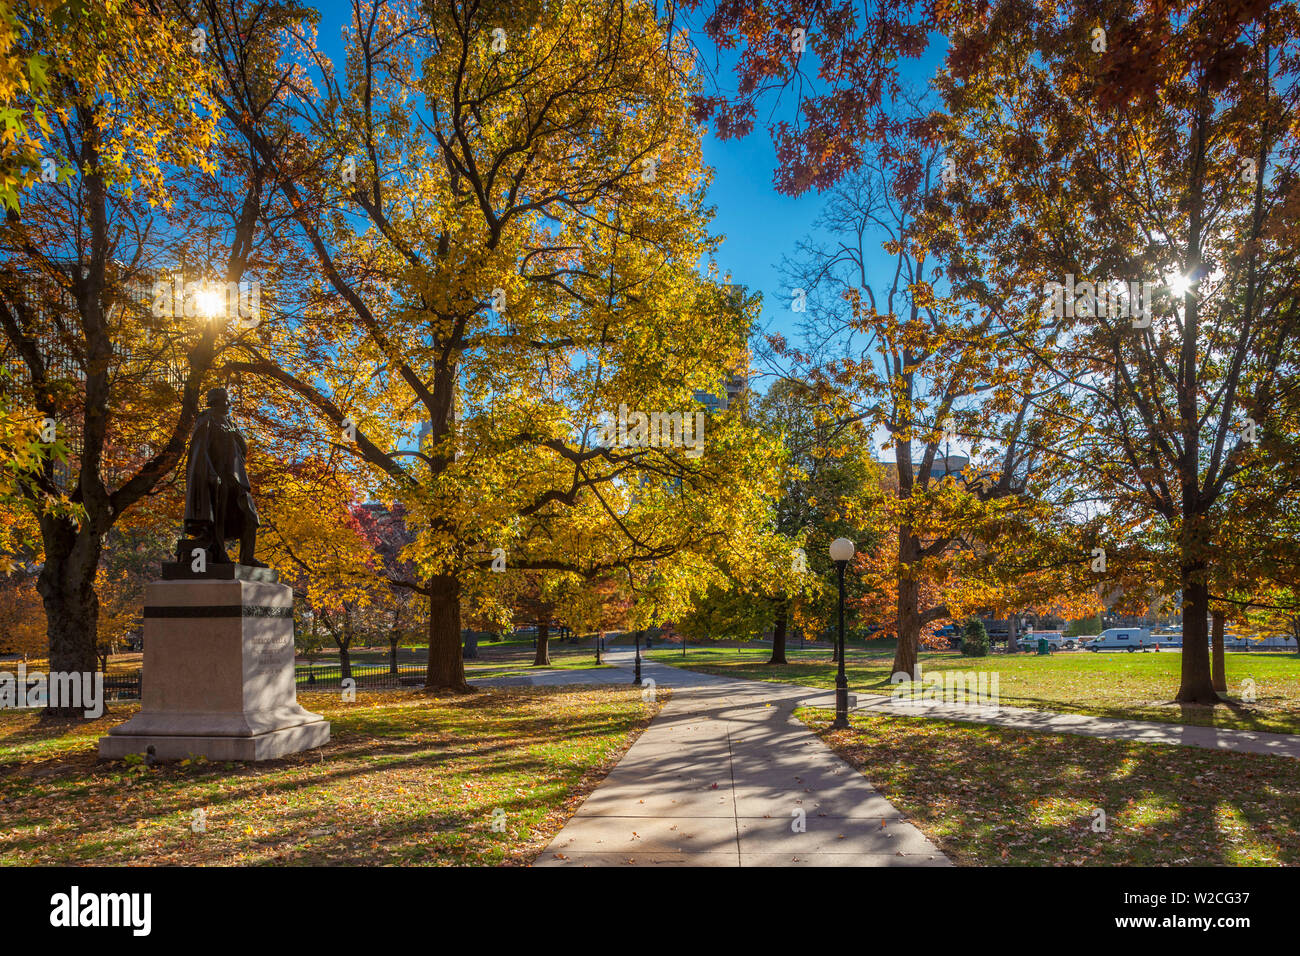 USA, New York, Hartford, Bushnell Park, automne, sttue de Horace Wells, découvreur de l'anesthésie en 1844 Banque D'Images